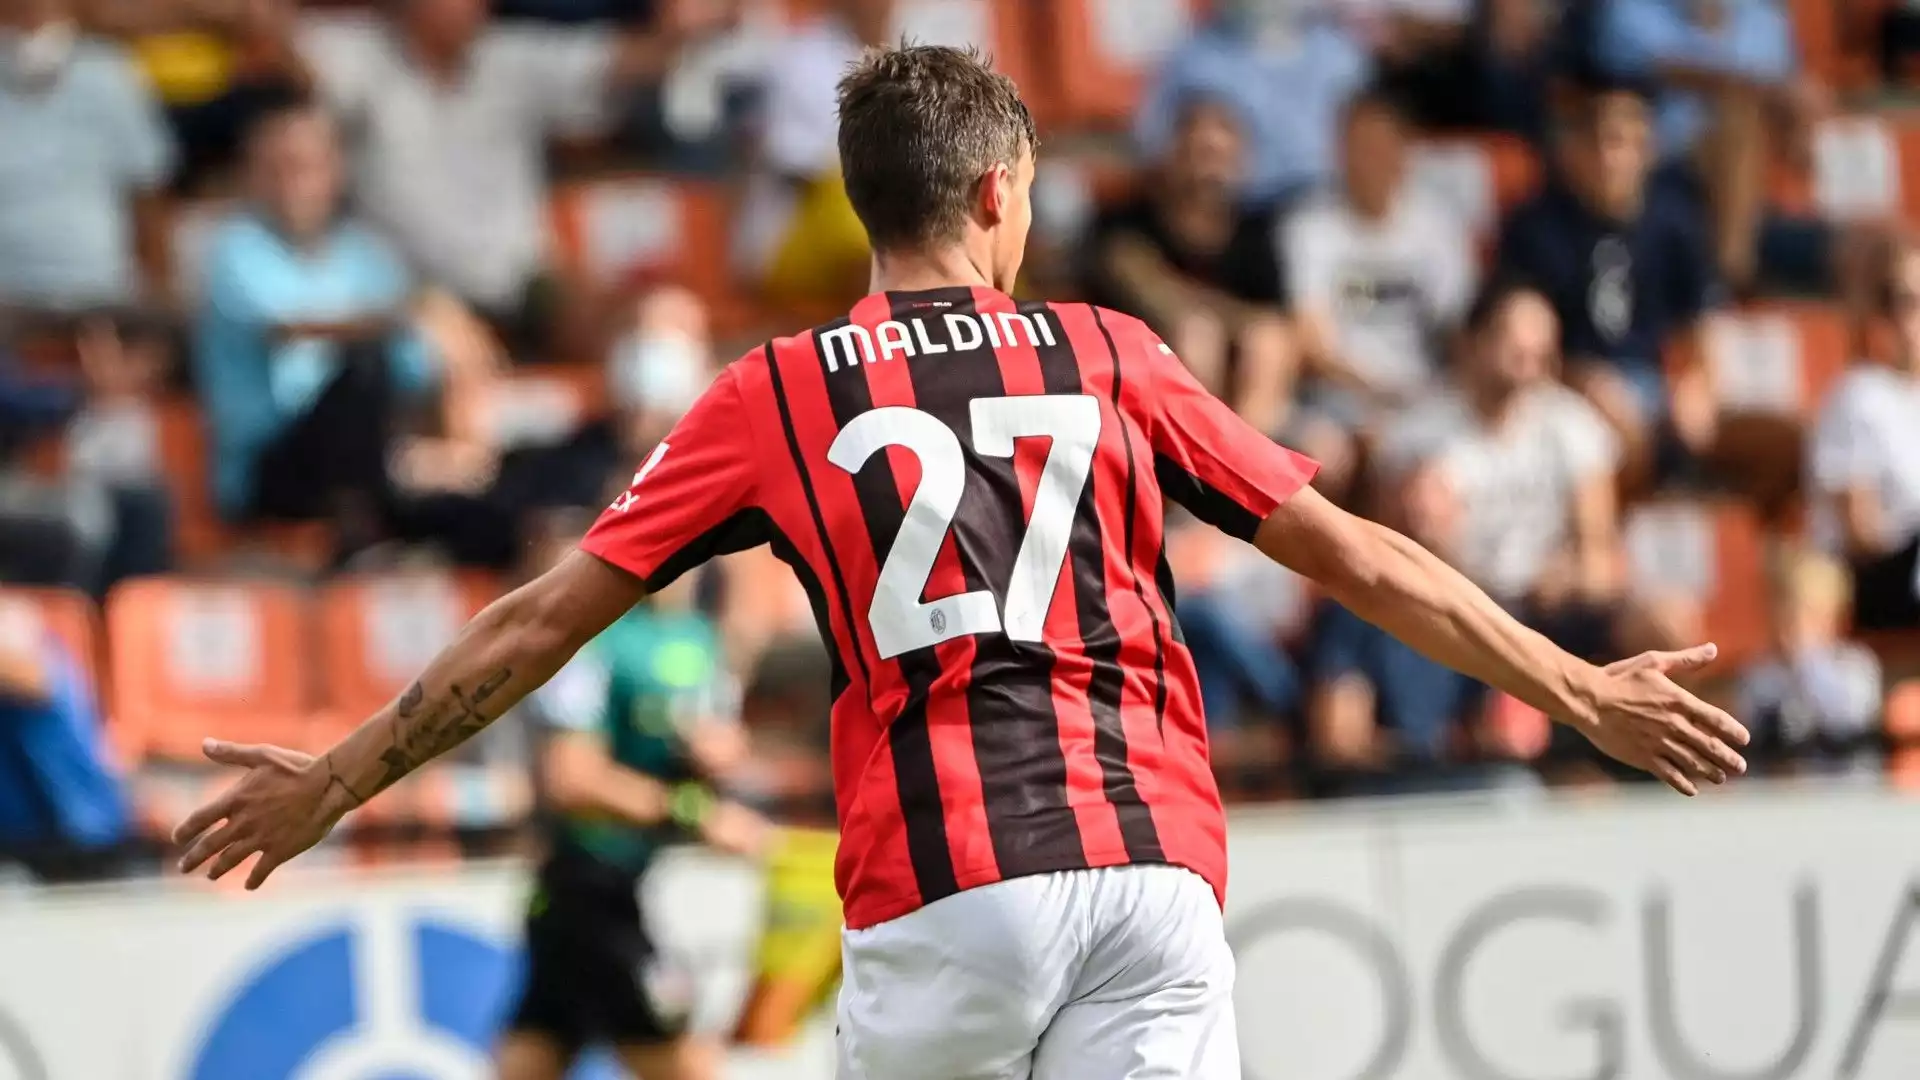 Daniel Maldini ha segnato 1 gol con la maglia della prima squadra del Milan